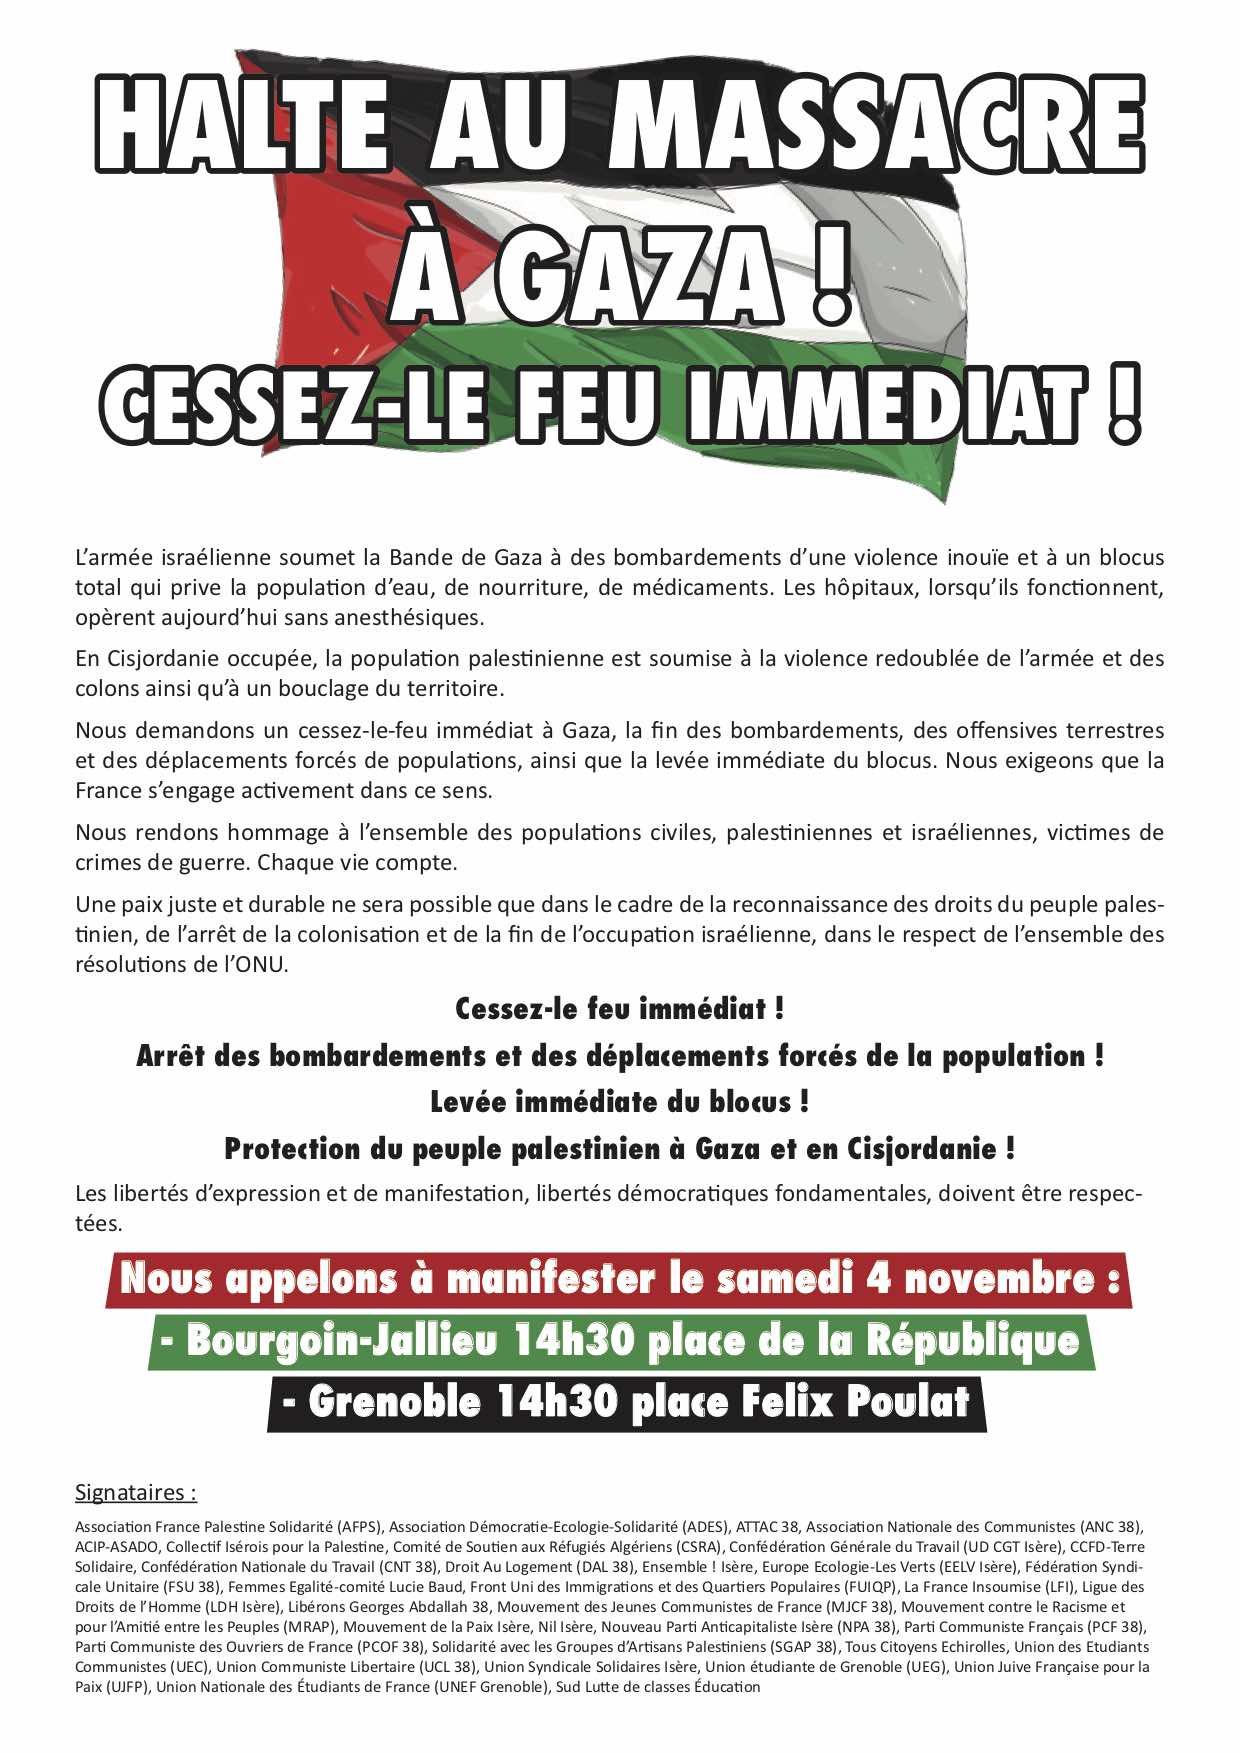 rassemblement pour mettre fin au massacre à Gaza Samedi 04/11 à 14h30 Place Felix Poulat à Grenoble / 14h30 Place de la république à Bourgoin-Jallieu